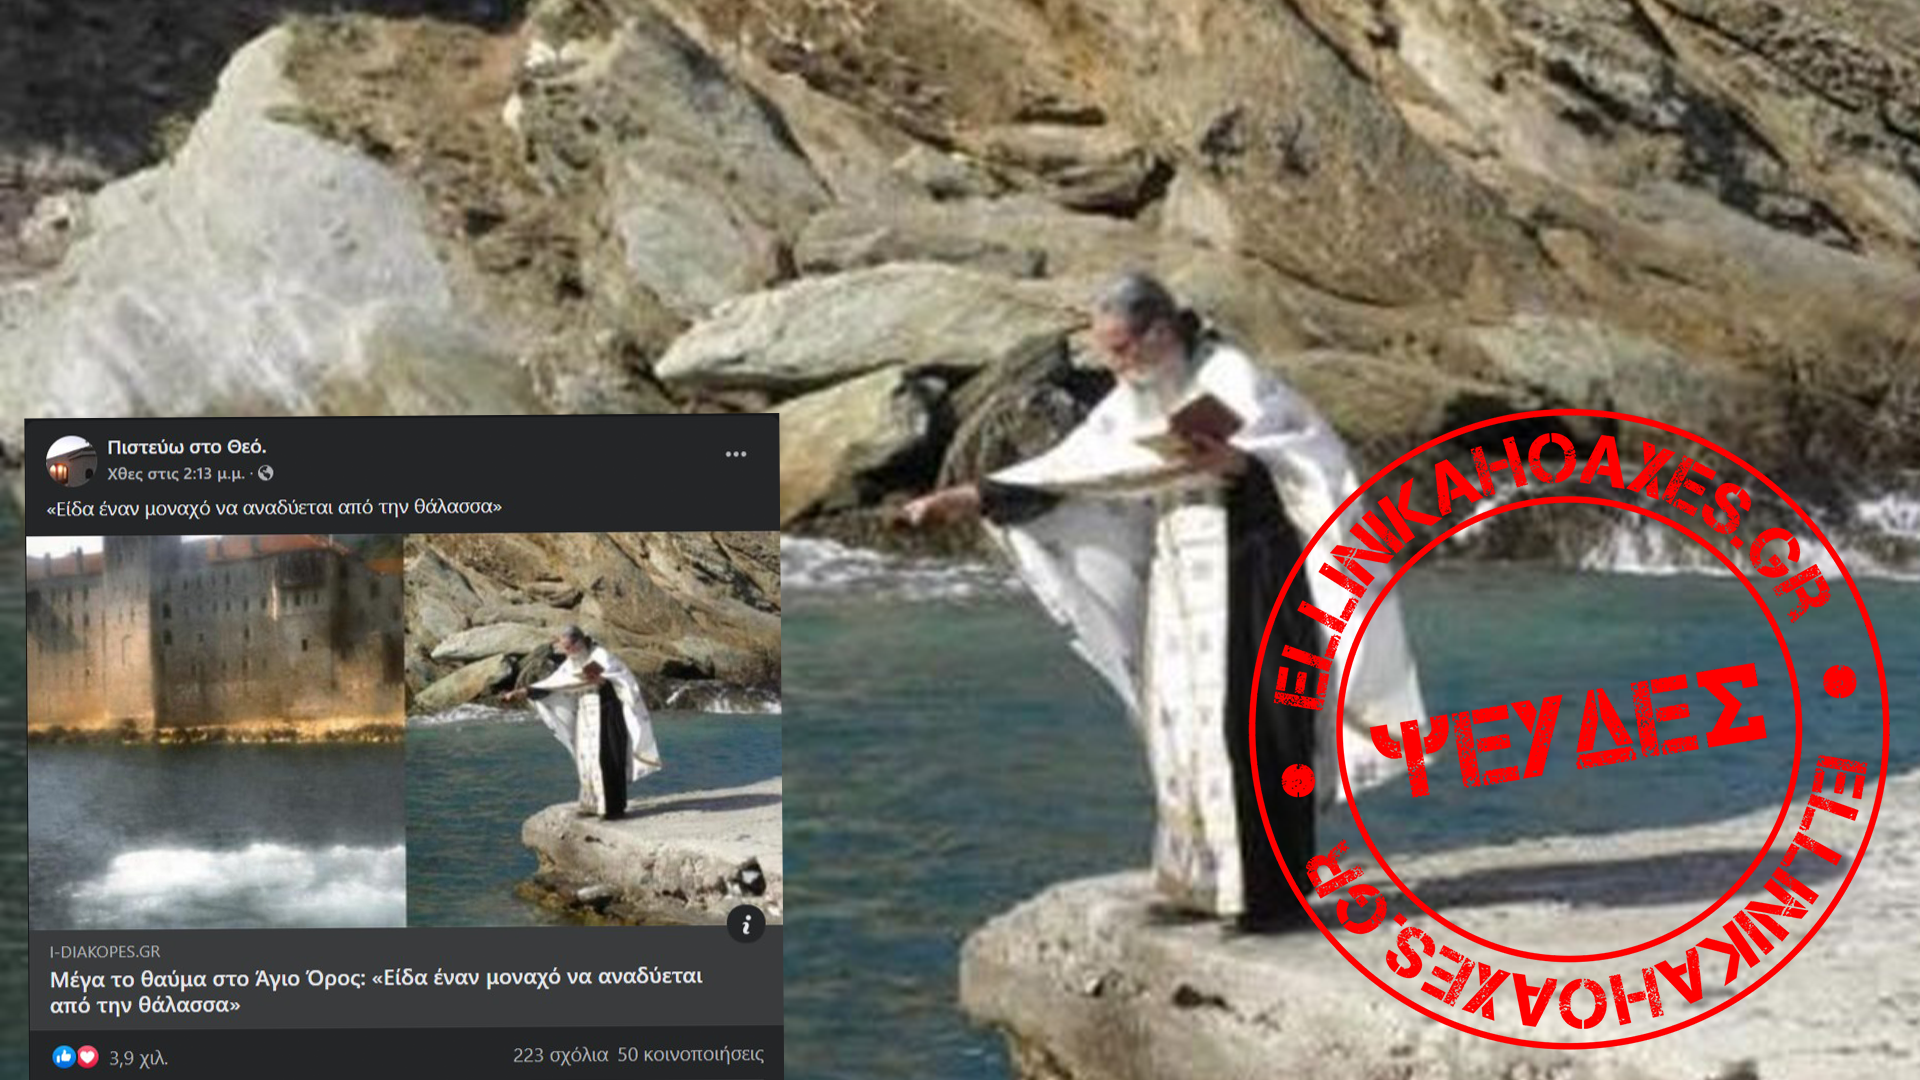 Αναξιόπιστη διήγηση περί μοναχού που «αναδύεται από τη θάλασσα» ανακοινοποιείται συχνά στο Facebook